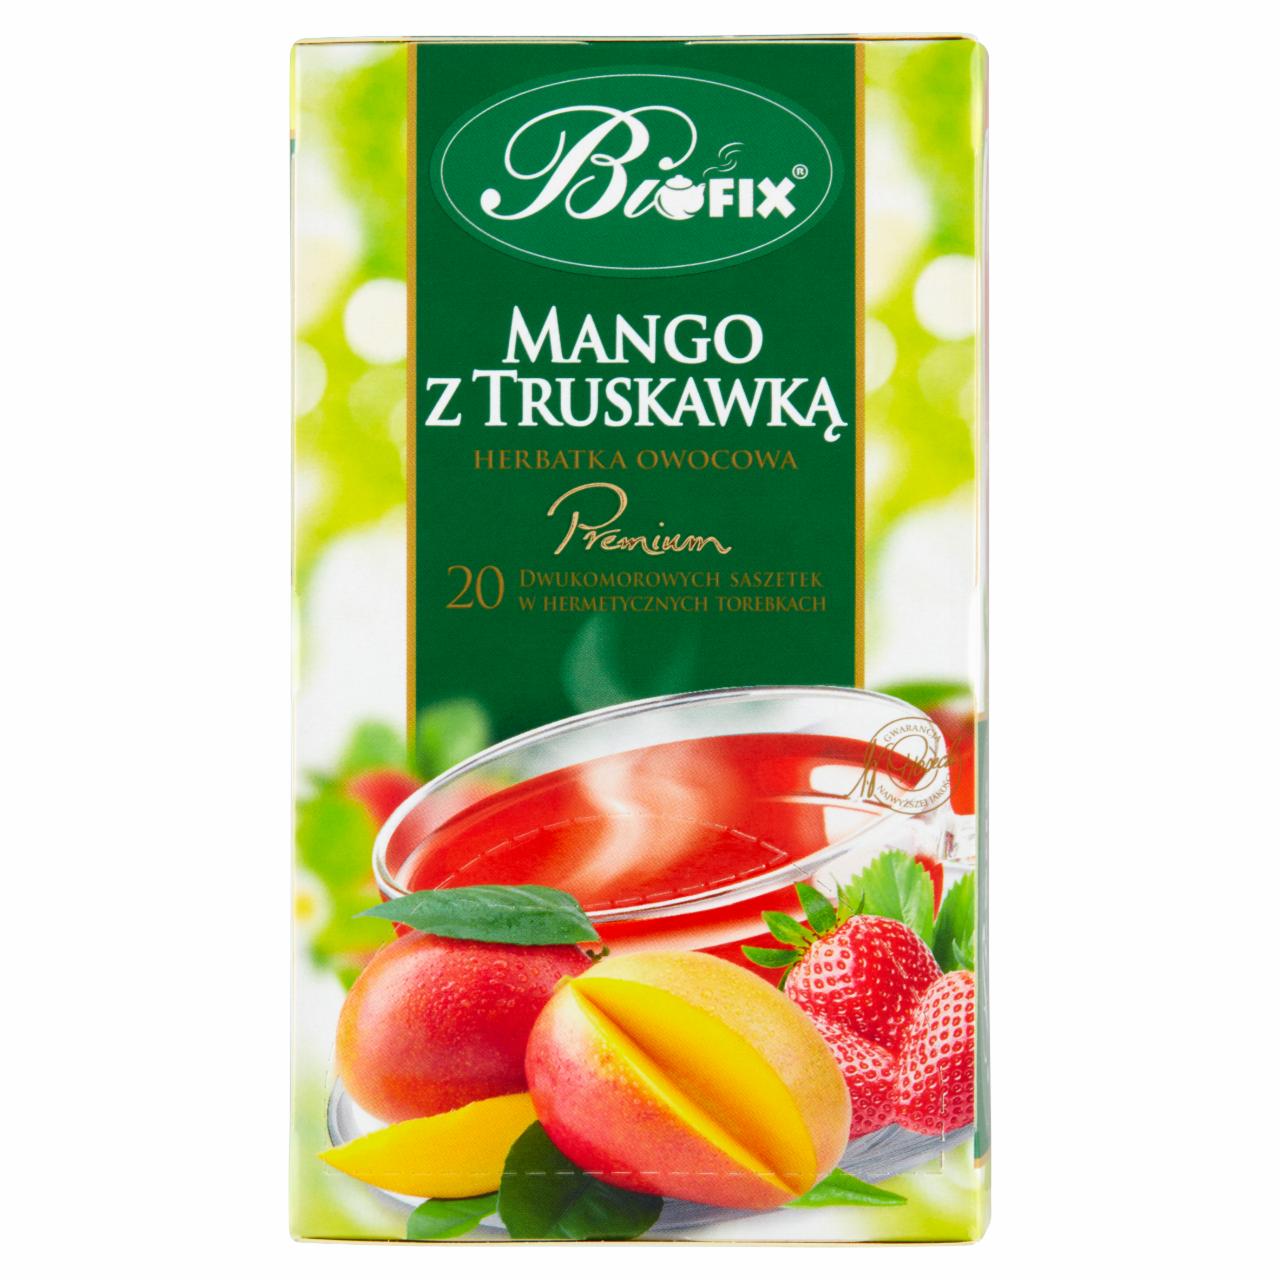 Zdjęcia - Herbatka owocowa mango z truskawką Biofix